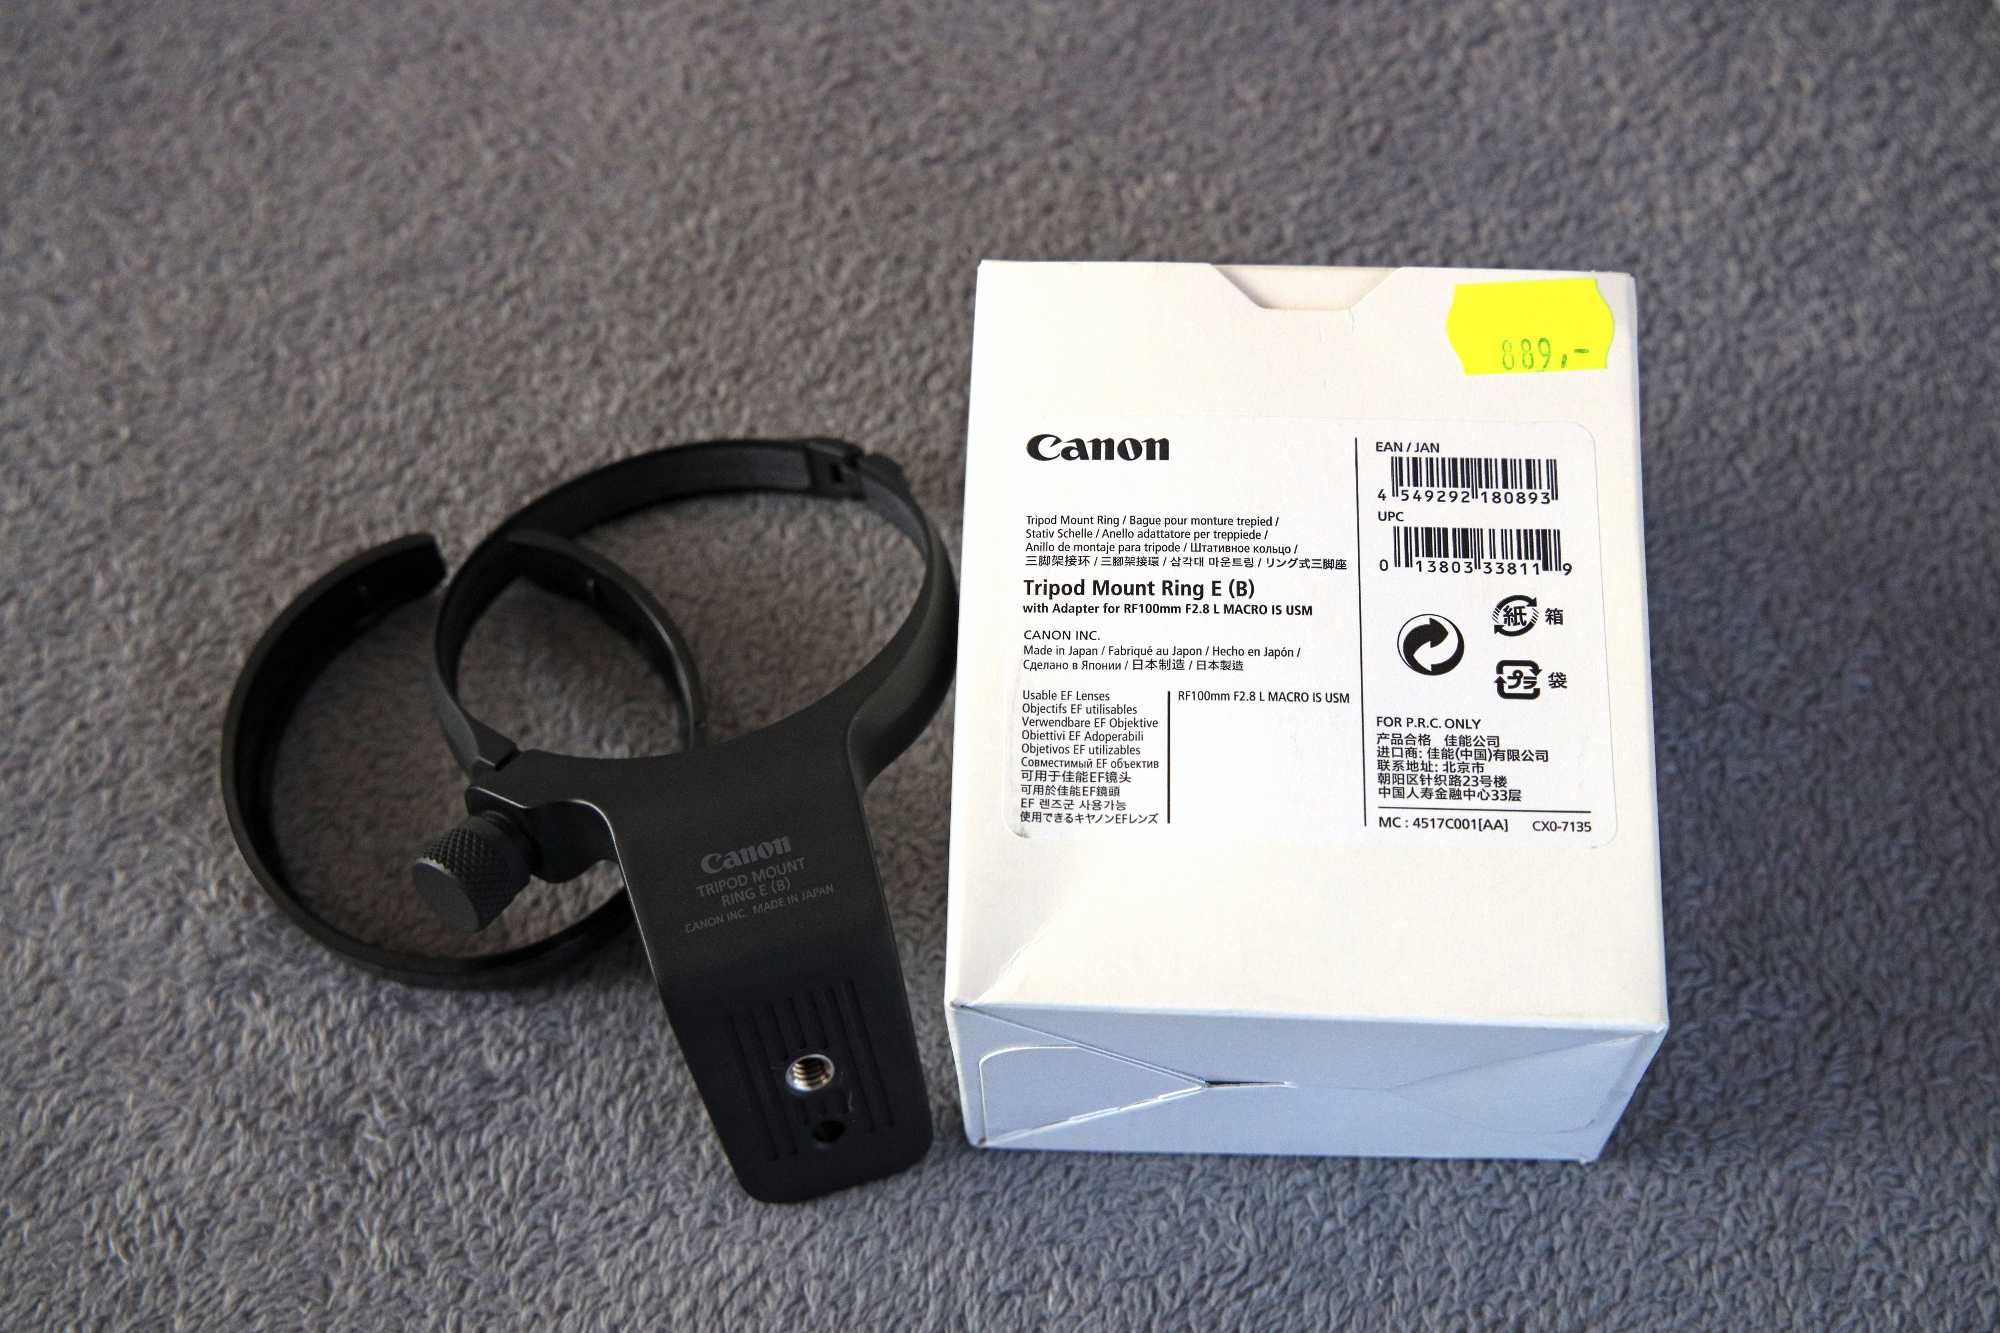 Canon mocowanie obiektywu RF 100mm f/2.8L MACRO IS USM